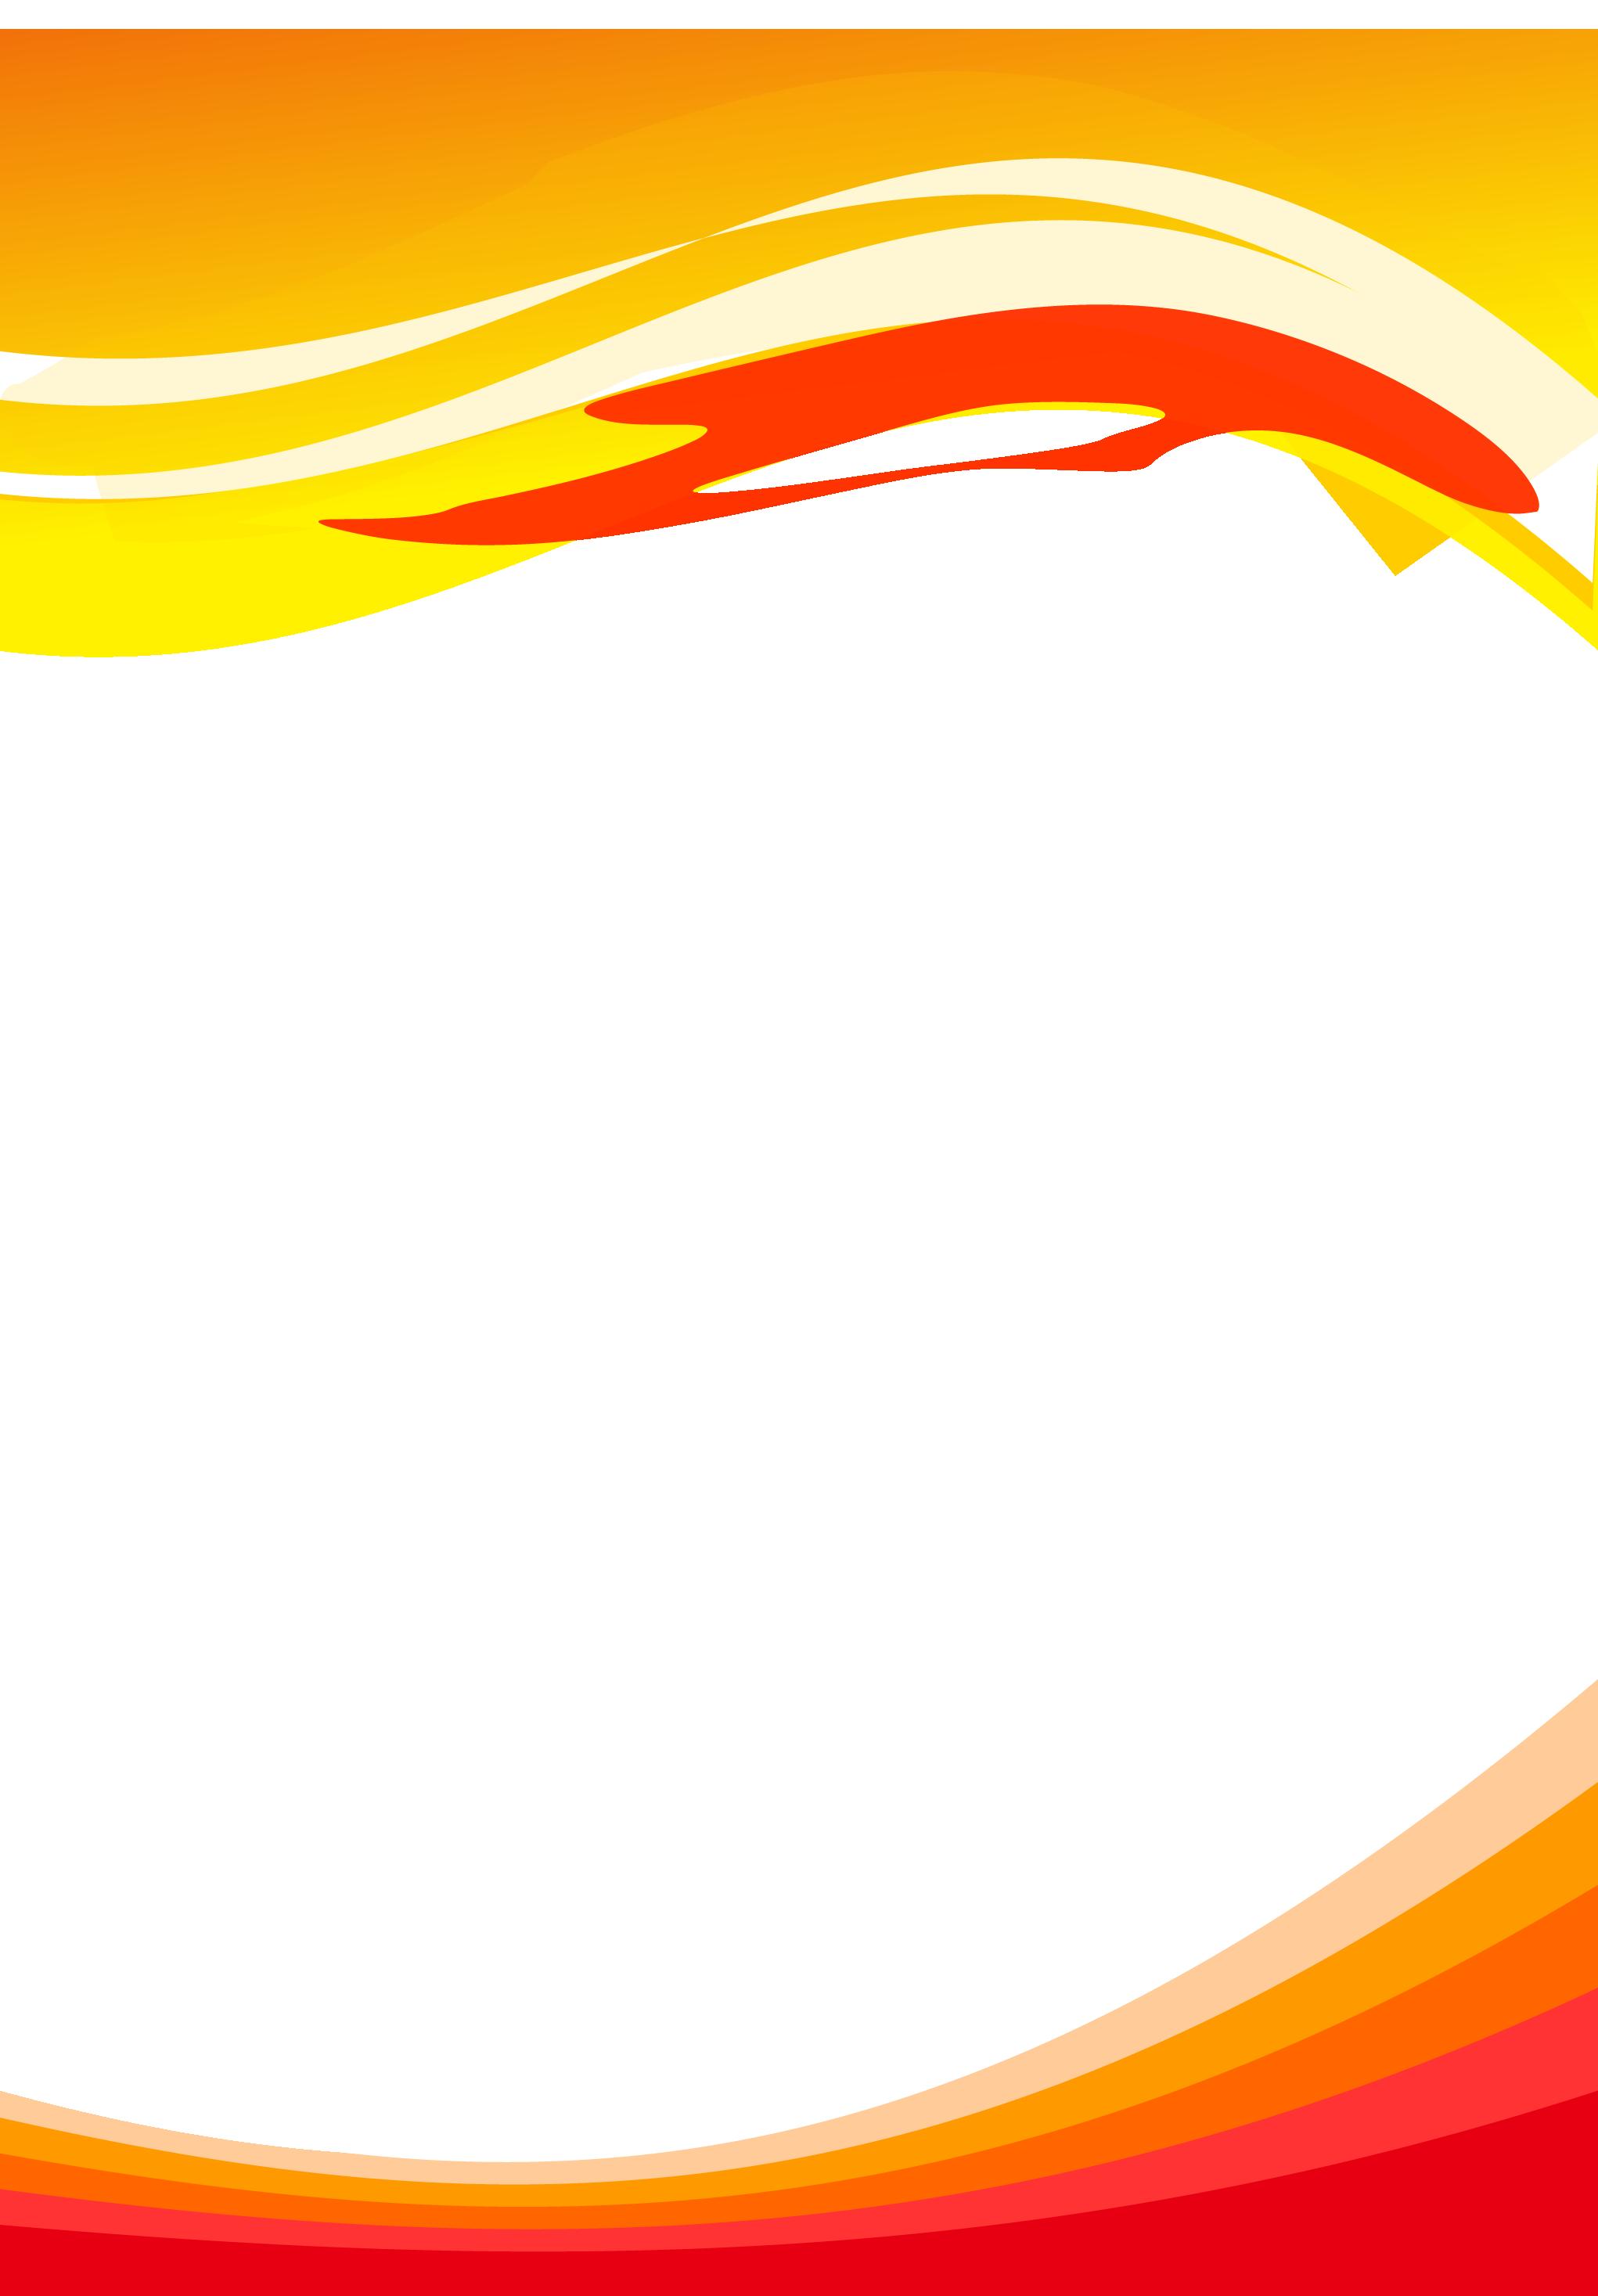 Vector sóng màu cam sẽ mang tới cho bạn sự tươi trẻ, năng động và sáng tạo cho thiết kế của mình. Hãy khám phá hình ảnh liên quan để cập nhật những mẫu vector sóng màu cam độc đáo và hấp dẫn nhất.